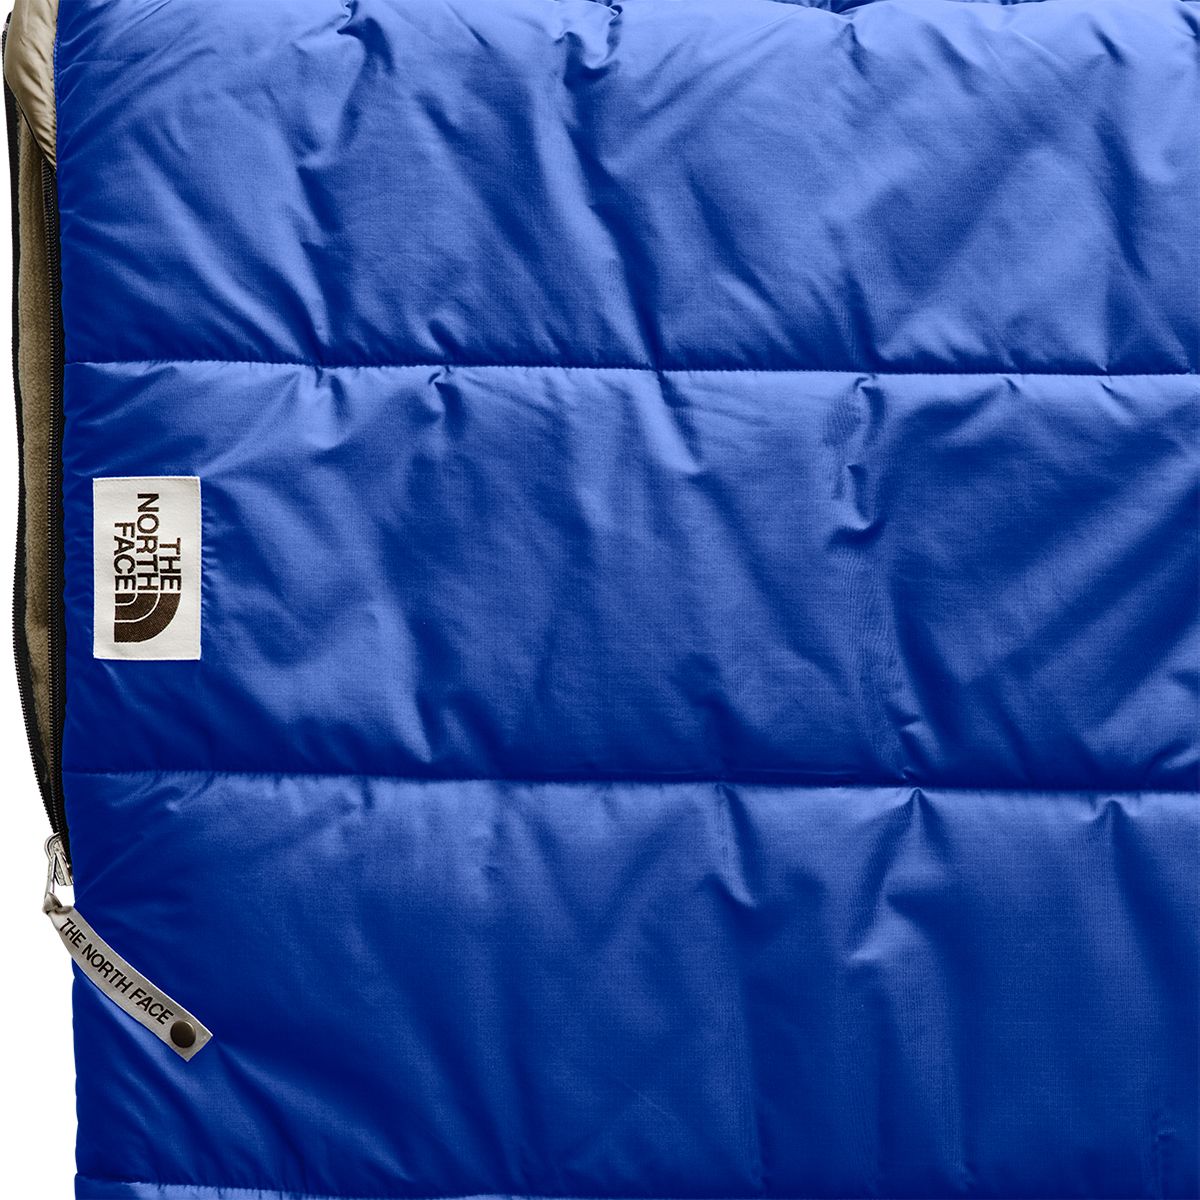 노스페이스 The North Face Eco Trail Bed Sleeping Bag: 20F Synthetic - Hike & Camp